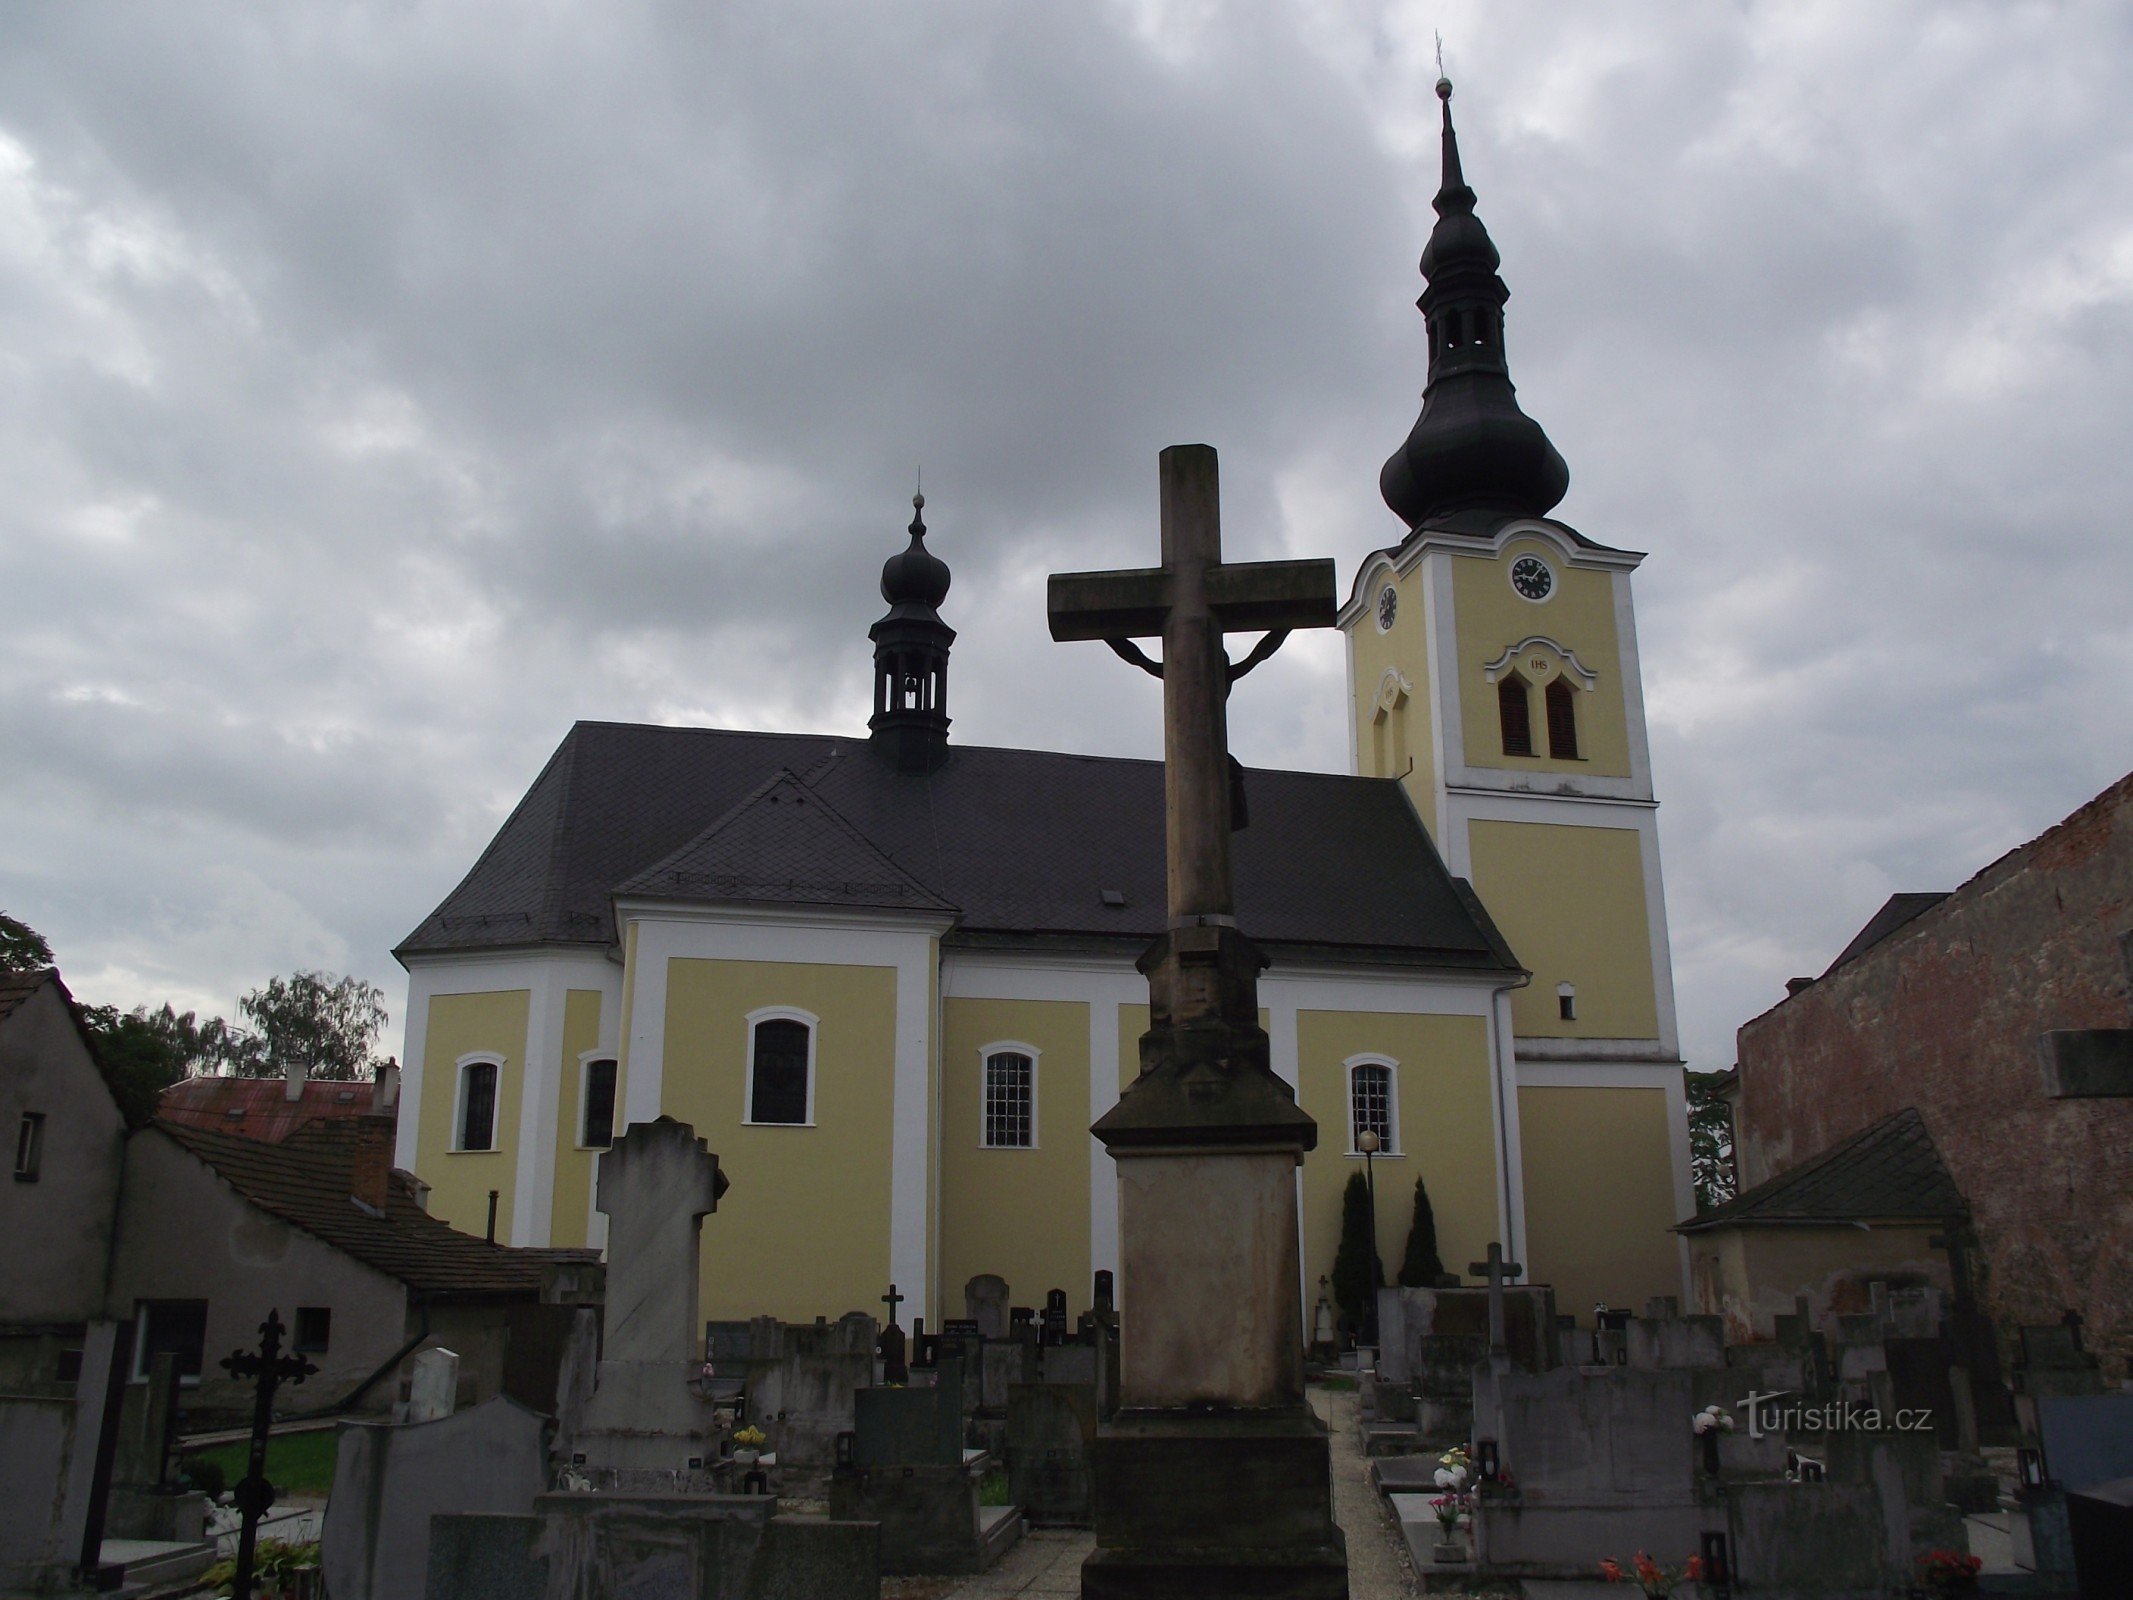 Moravičany - un village plein de (pas seulement de petits) monuments